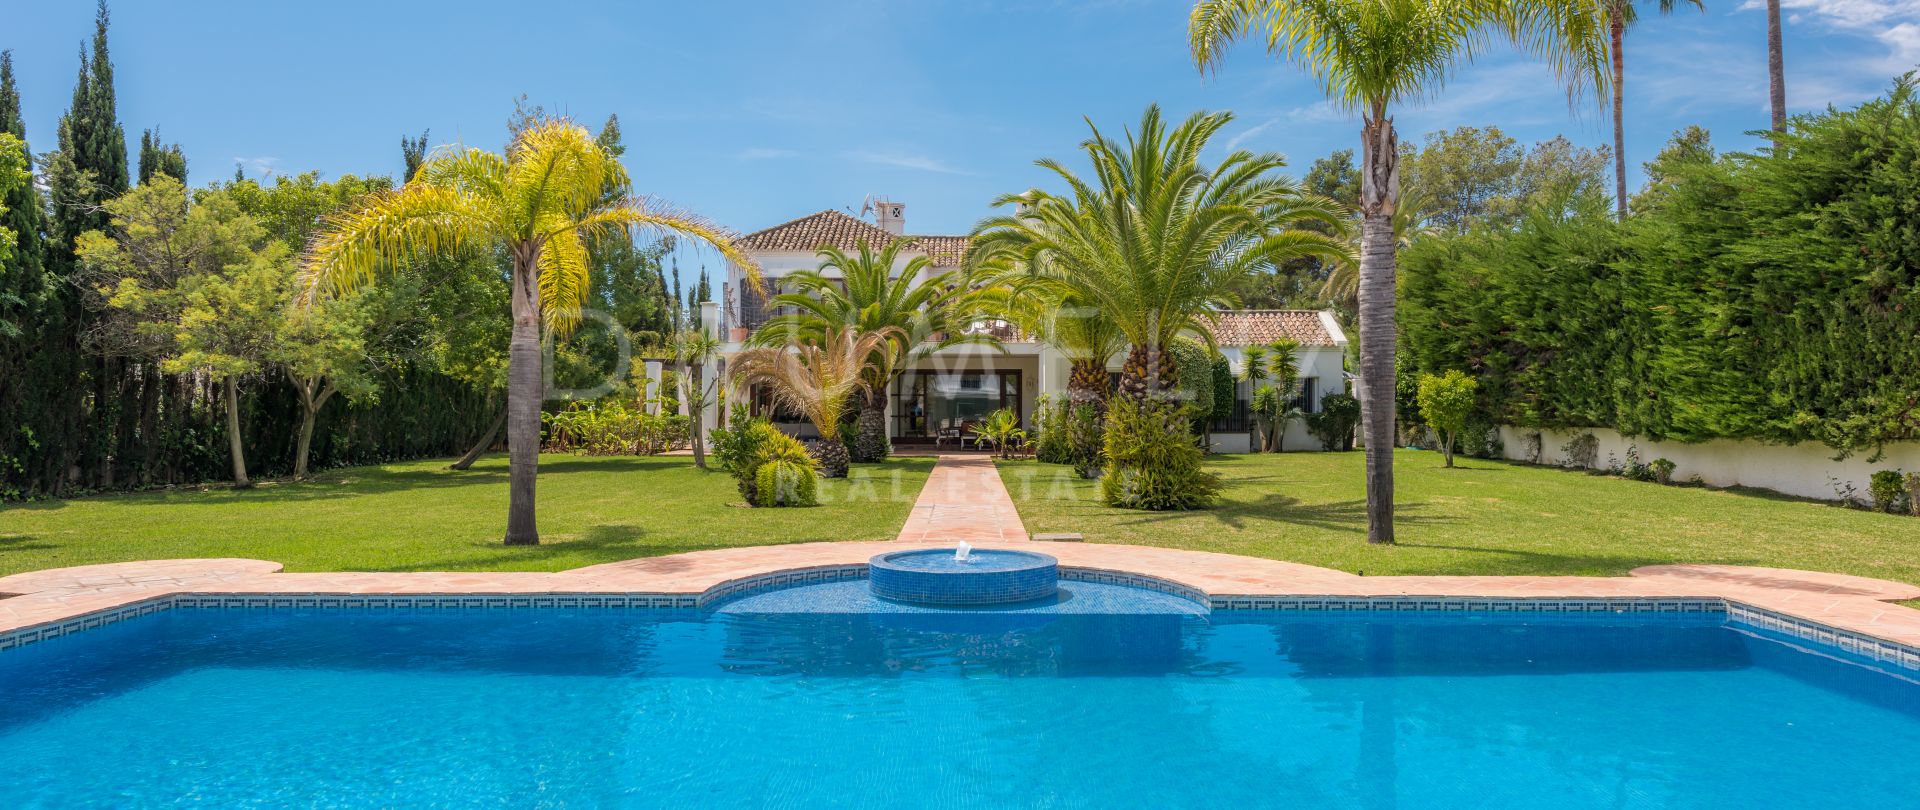 Magnífica casa clásica mediterránea de lujo en Guadalmina Baja, San Pedro de Alcántara, Marbella